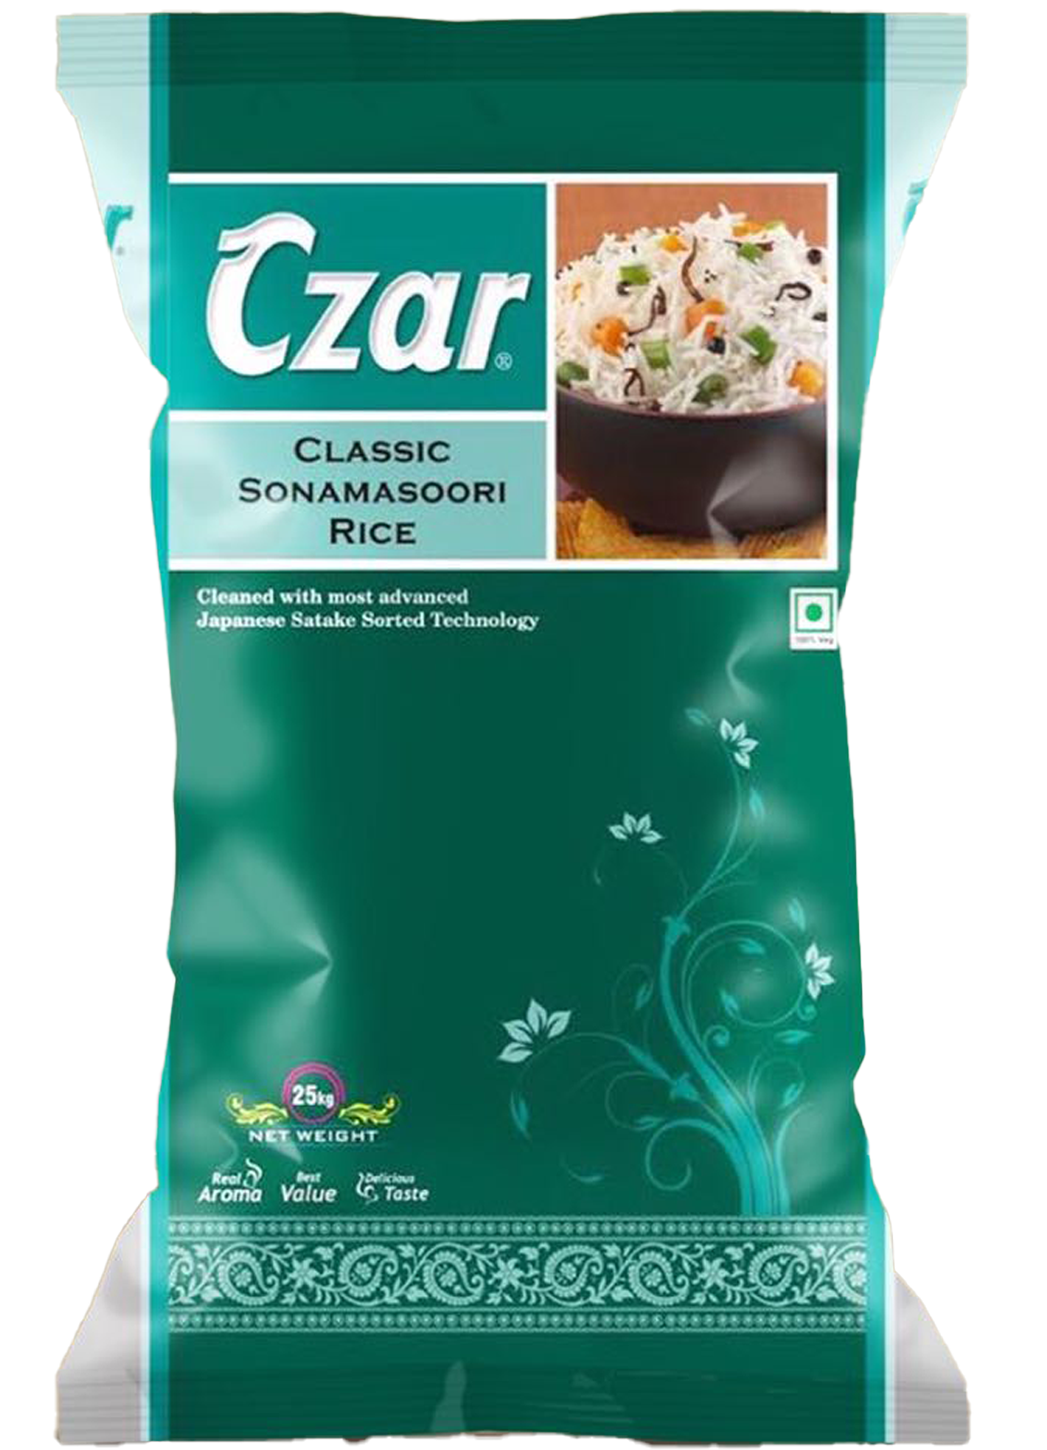 Czar Classic SonaMasoori Rice